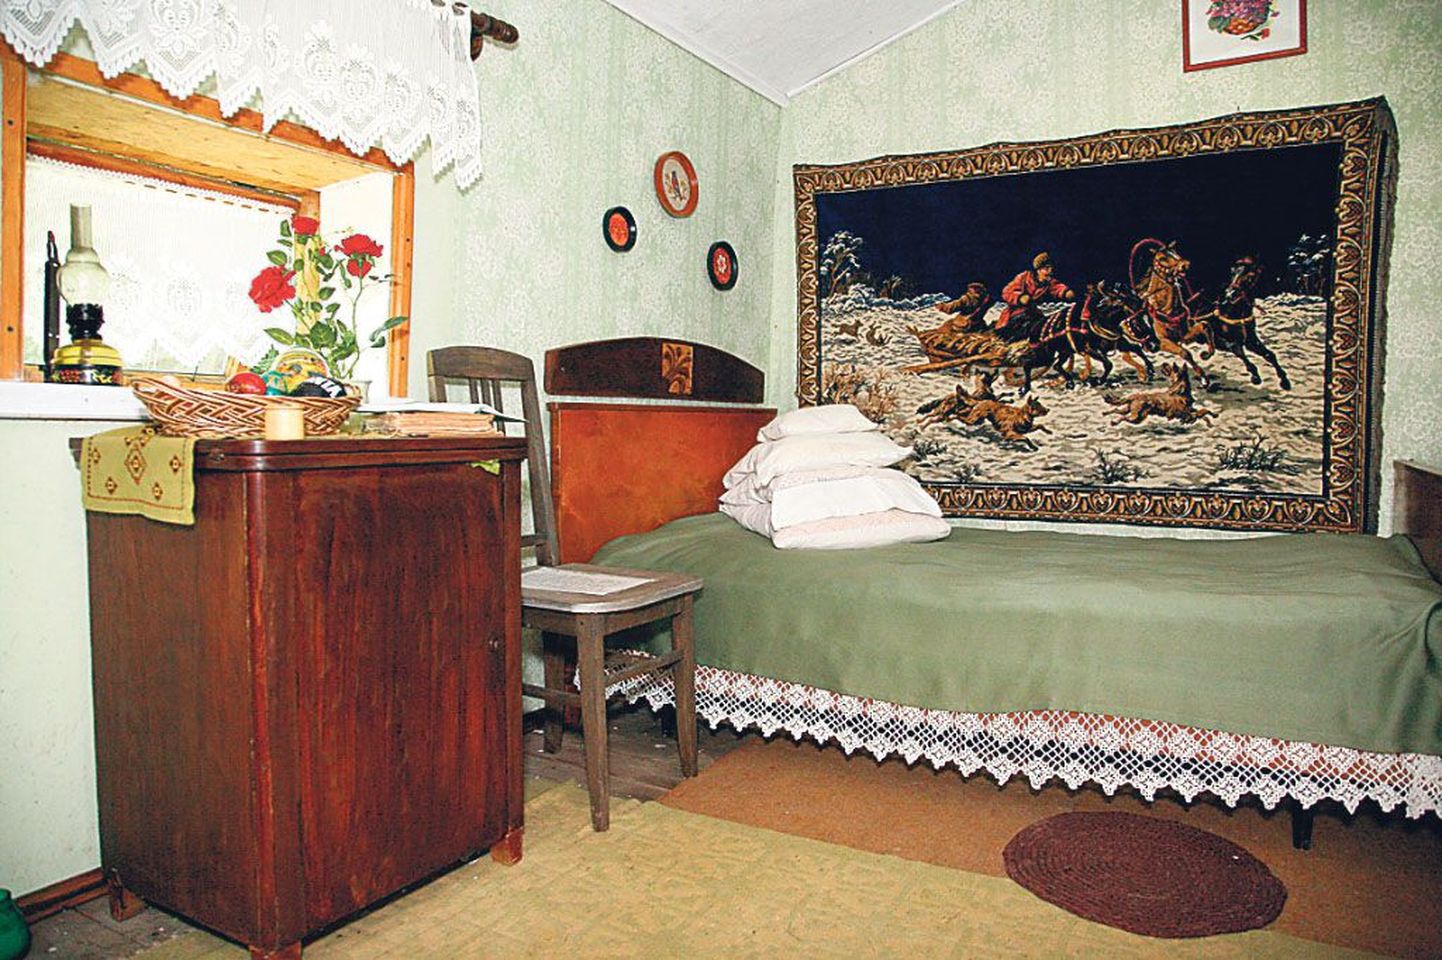 Sanga-Tõnise talu tutvustab ehedat Vene kultuuri.